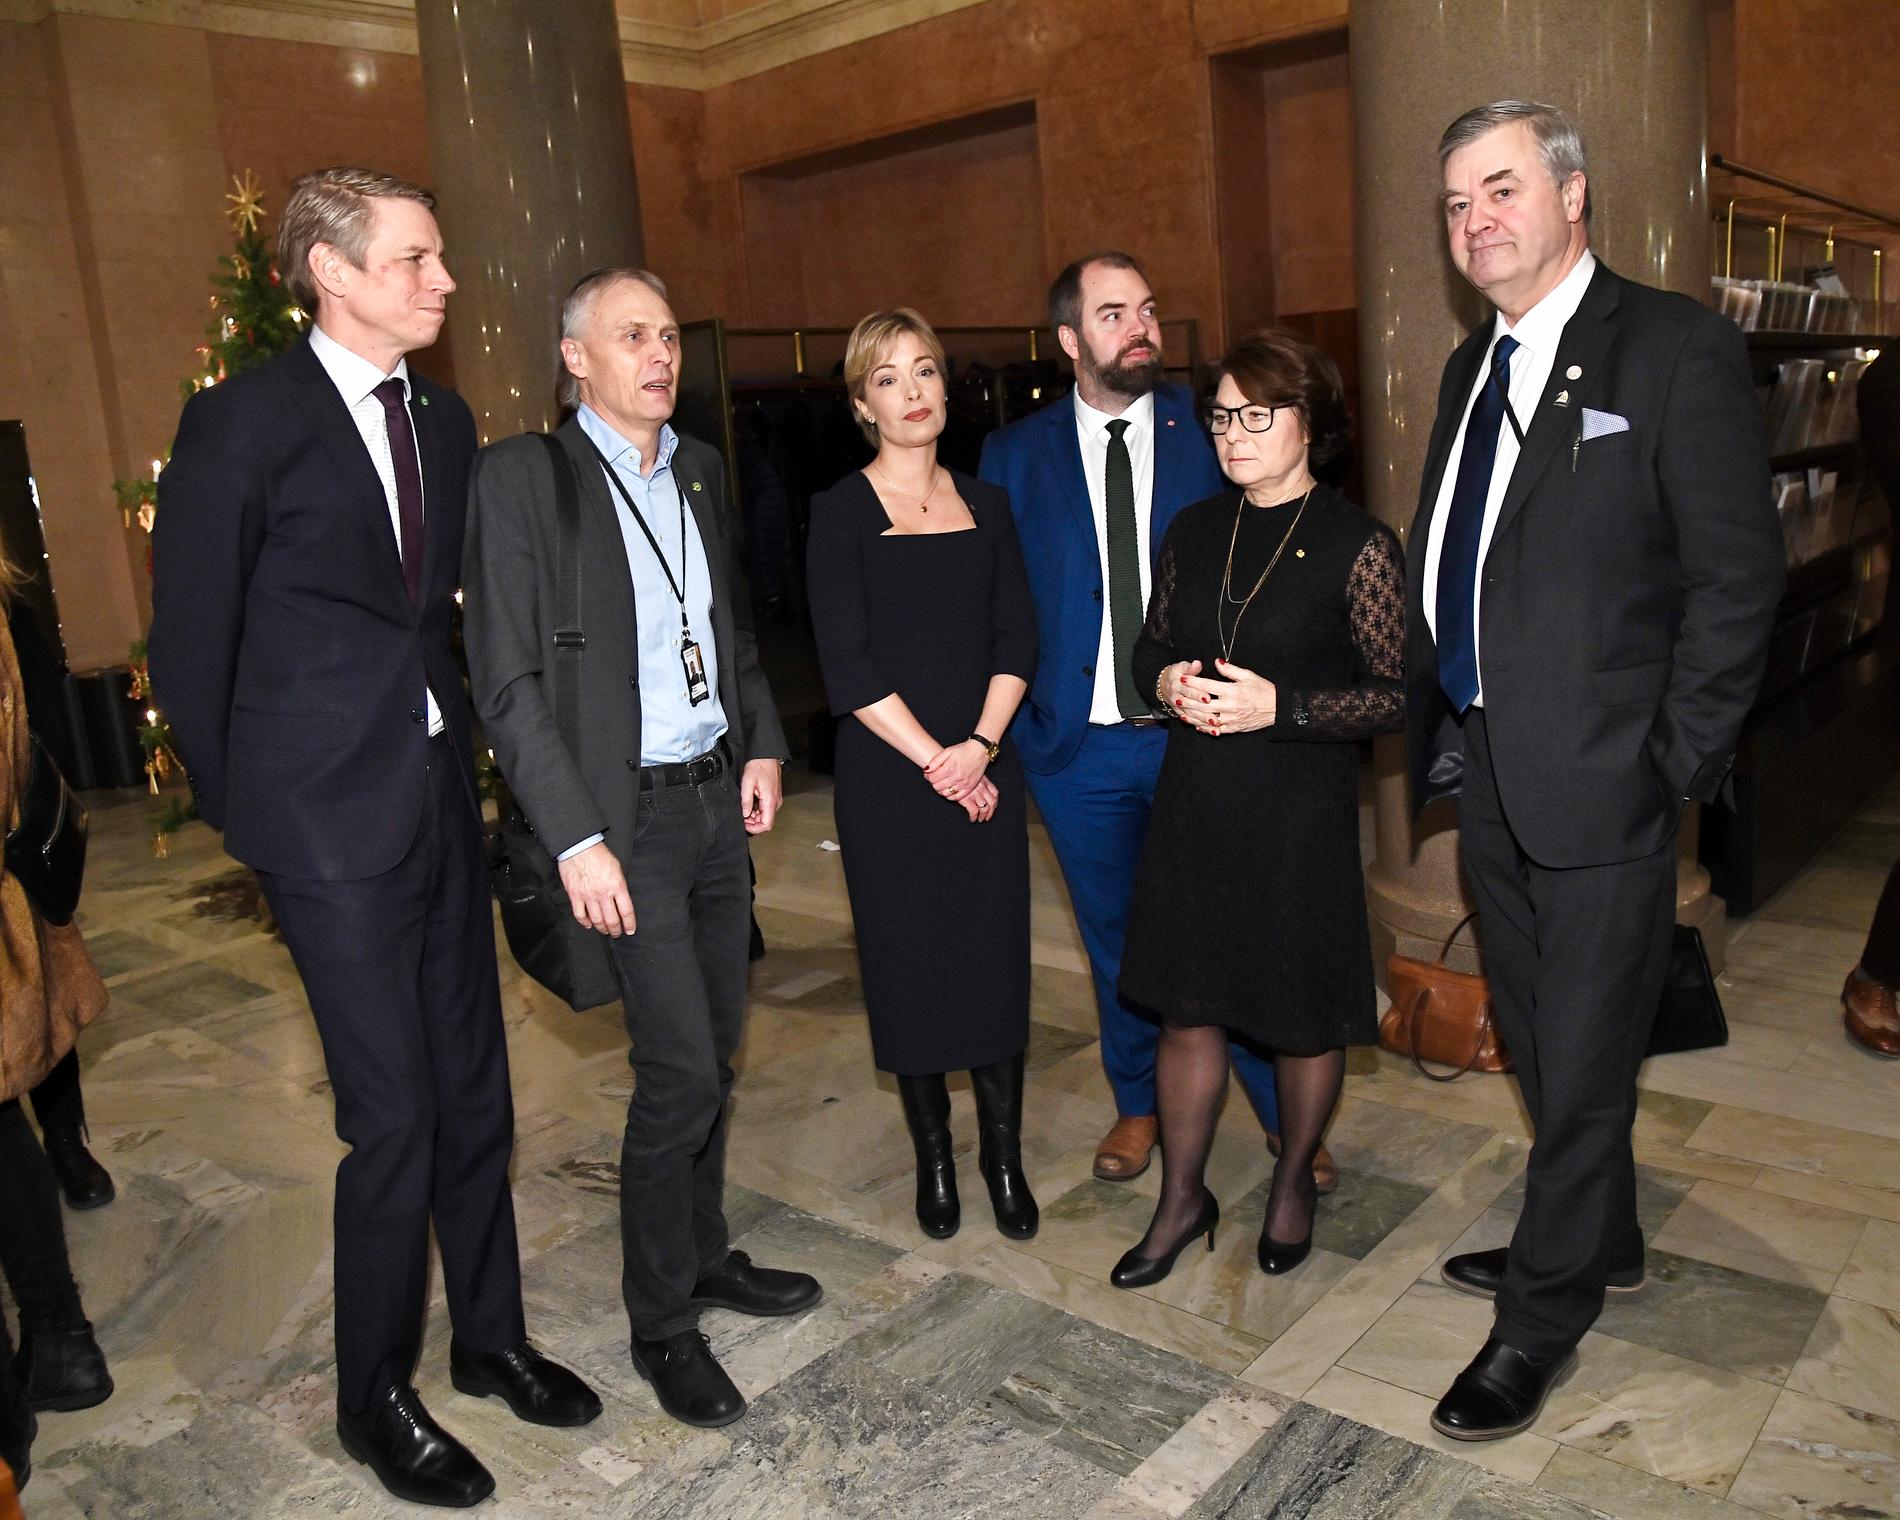 Finansmarknadsminister Per Bolund (MP), Rickard Persson (MP), Annika Strandhäll (S) , Fredrik Lundh Sammeli (S), Solveig Zander (C), Lars-Arne Stacksäng (M), kommenterar pensionsöverkommelsen i Riksdagen i Stockholm.